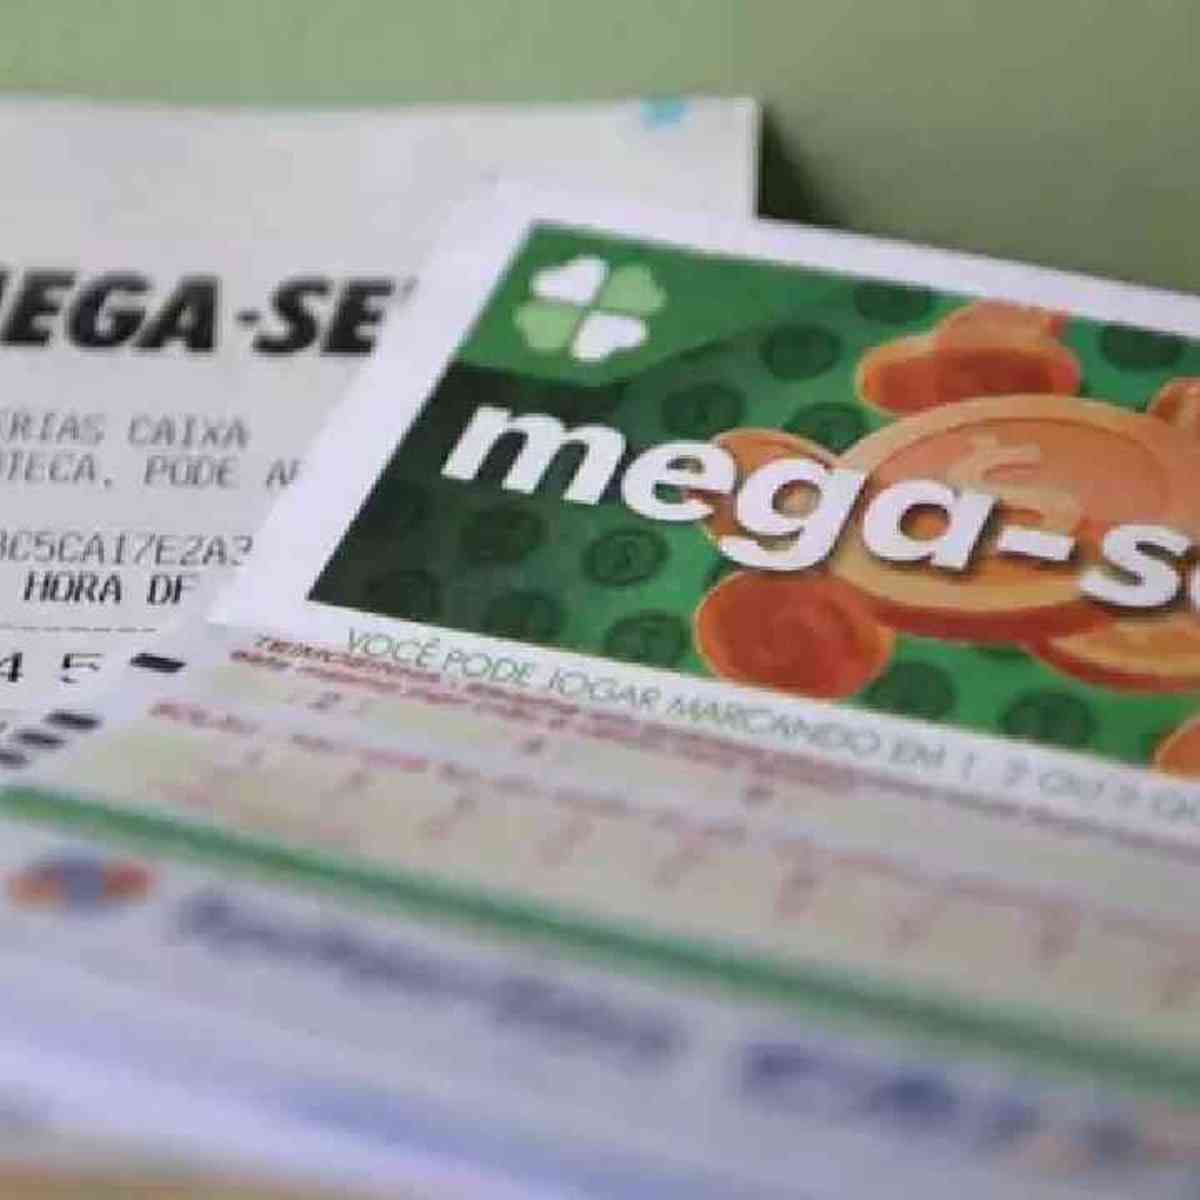 Mega-Sena: aposta do DF leva R$ 36 mil ao acertar 5 dezenas neste sábado